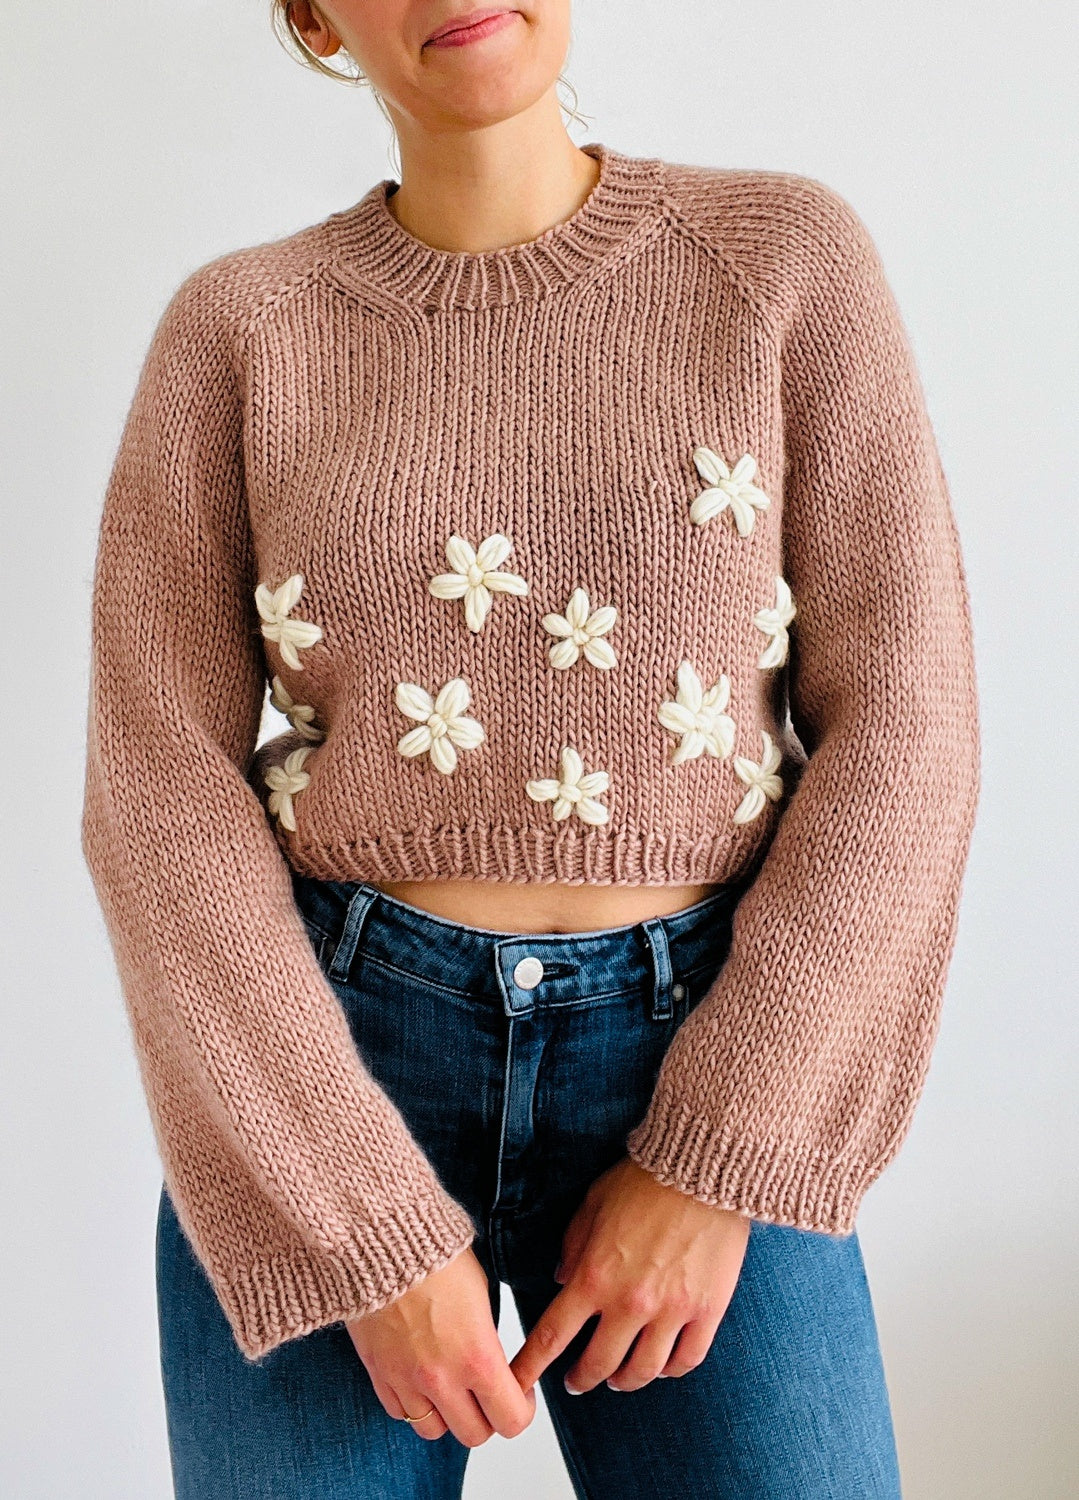 Alice Sweater Pattern